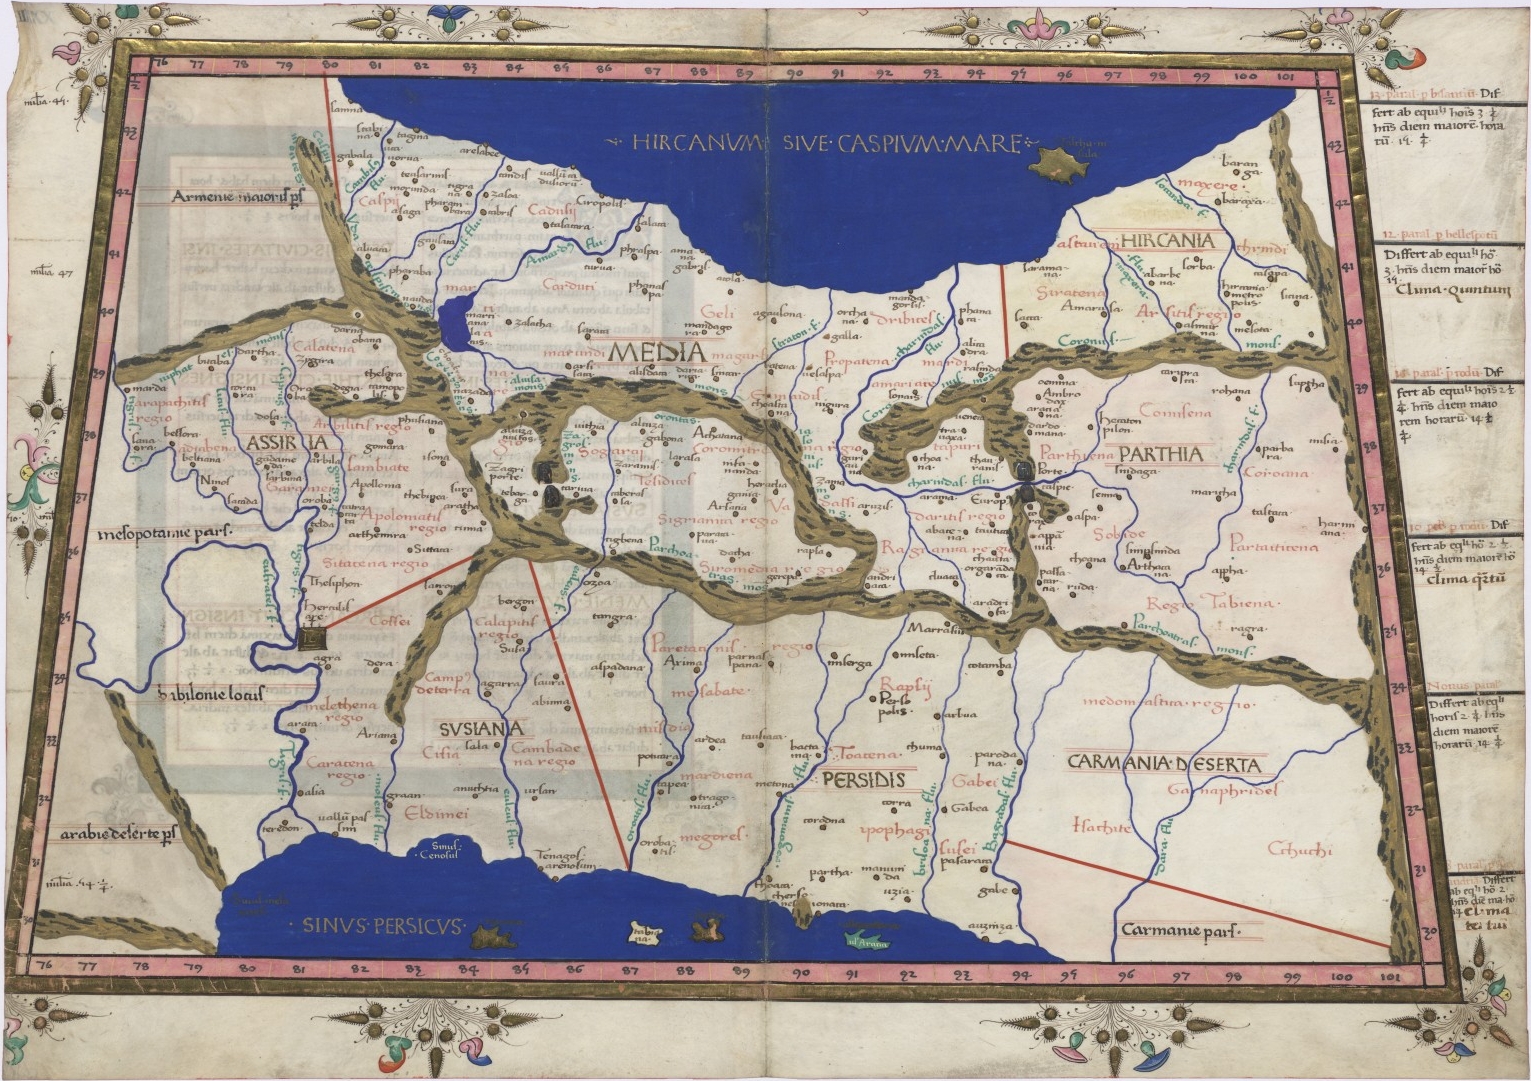 Ptolemaioksen kartografian renessanssiaikaista kuvitusta (1467): Persia ja Meedia.